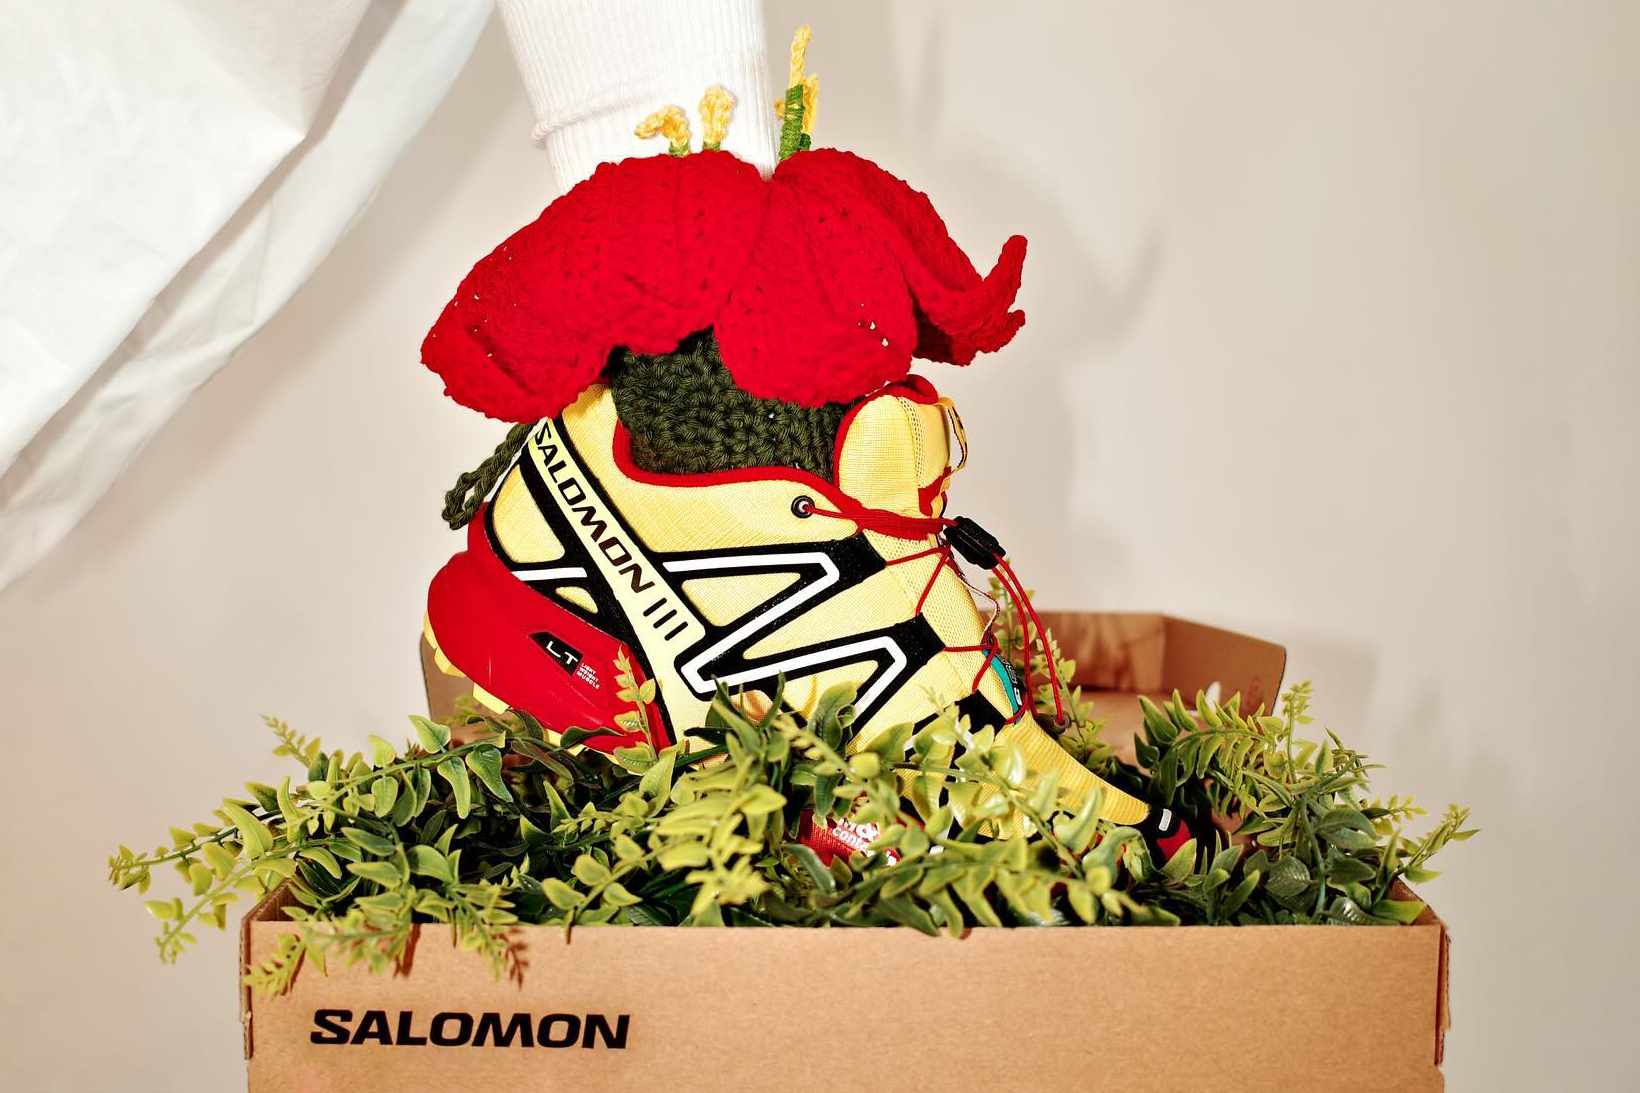 Salomon Speedcross 3 sneakers customized by crochet artist @ilyang.ilyang